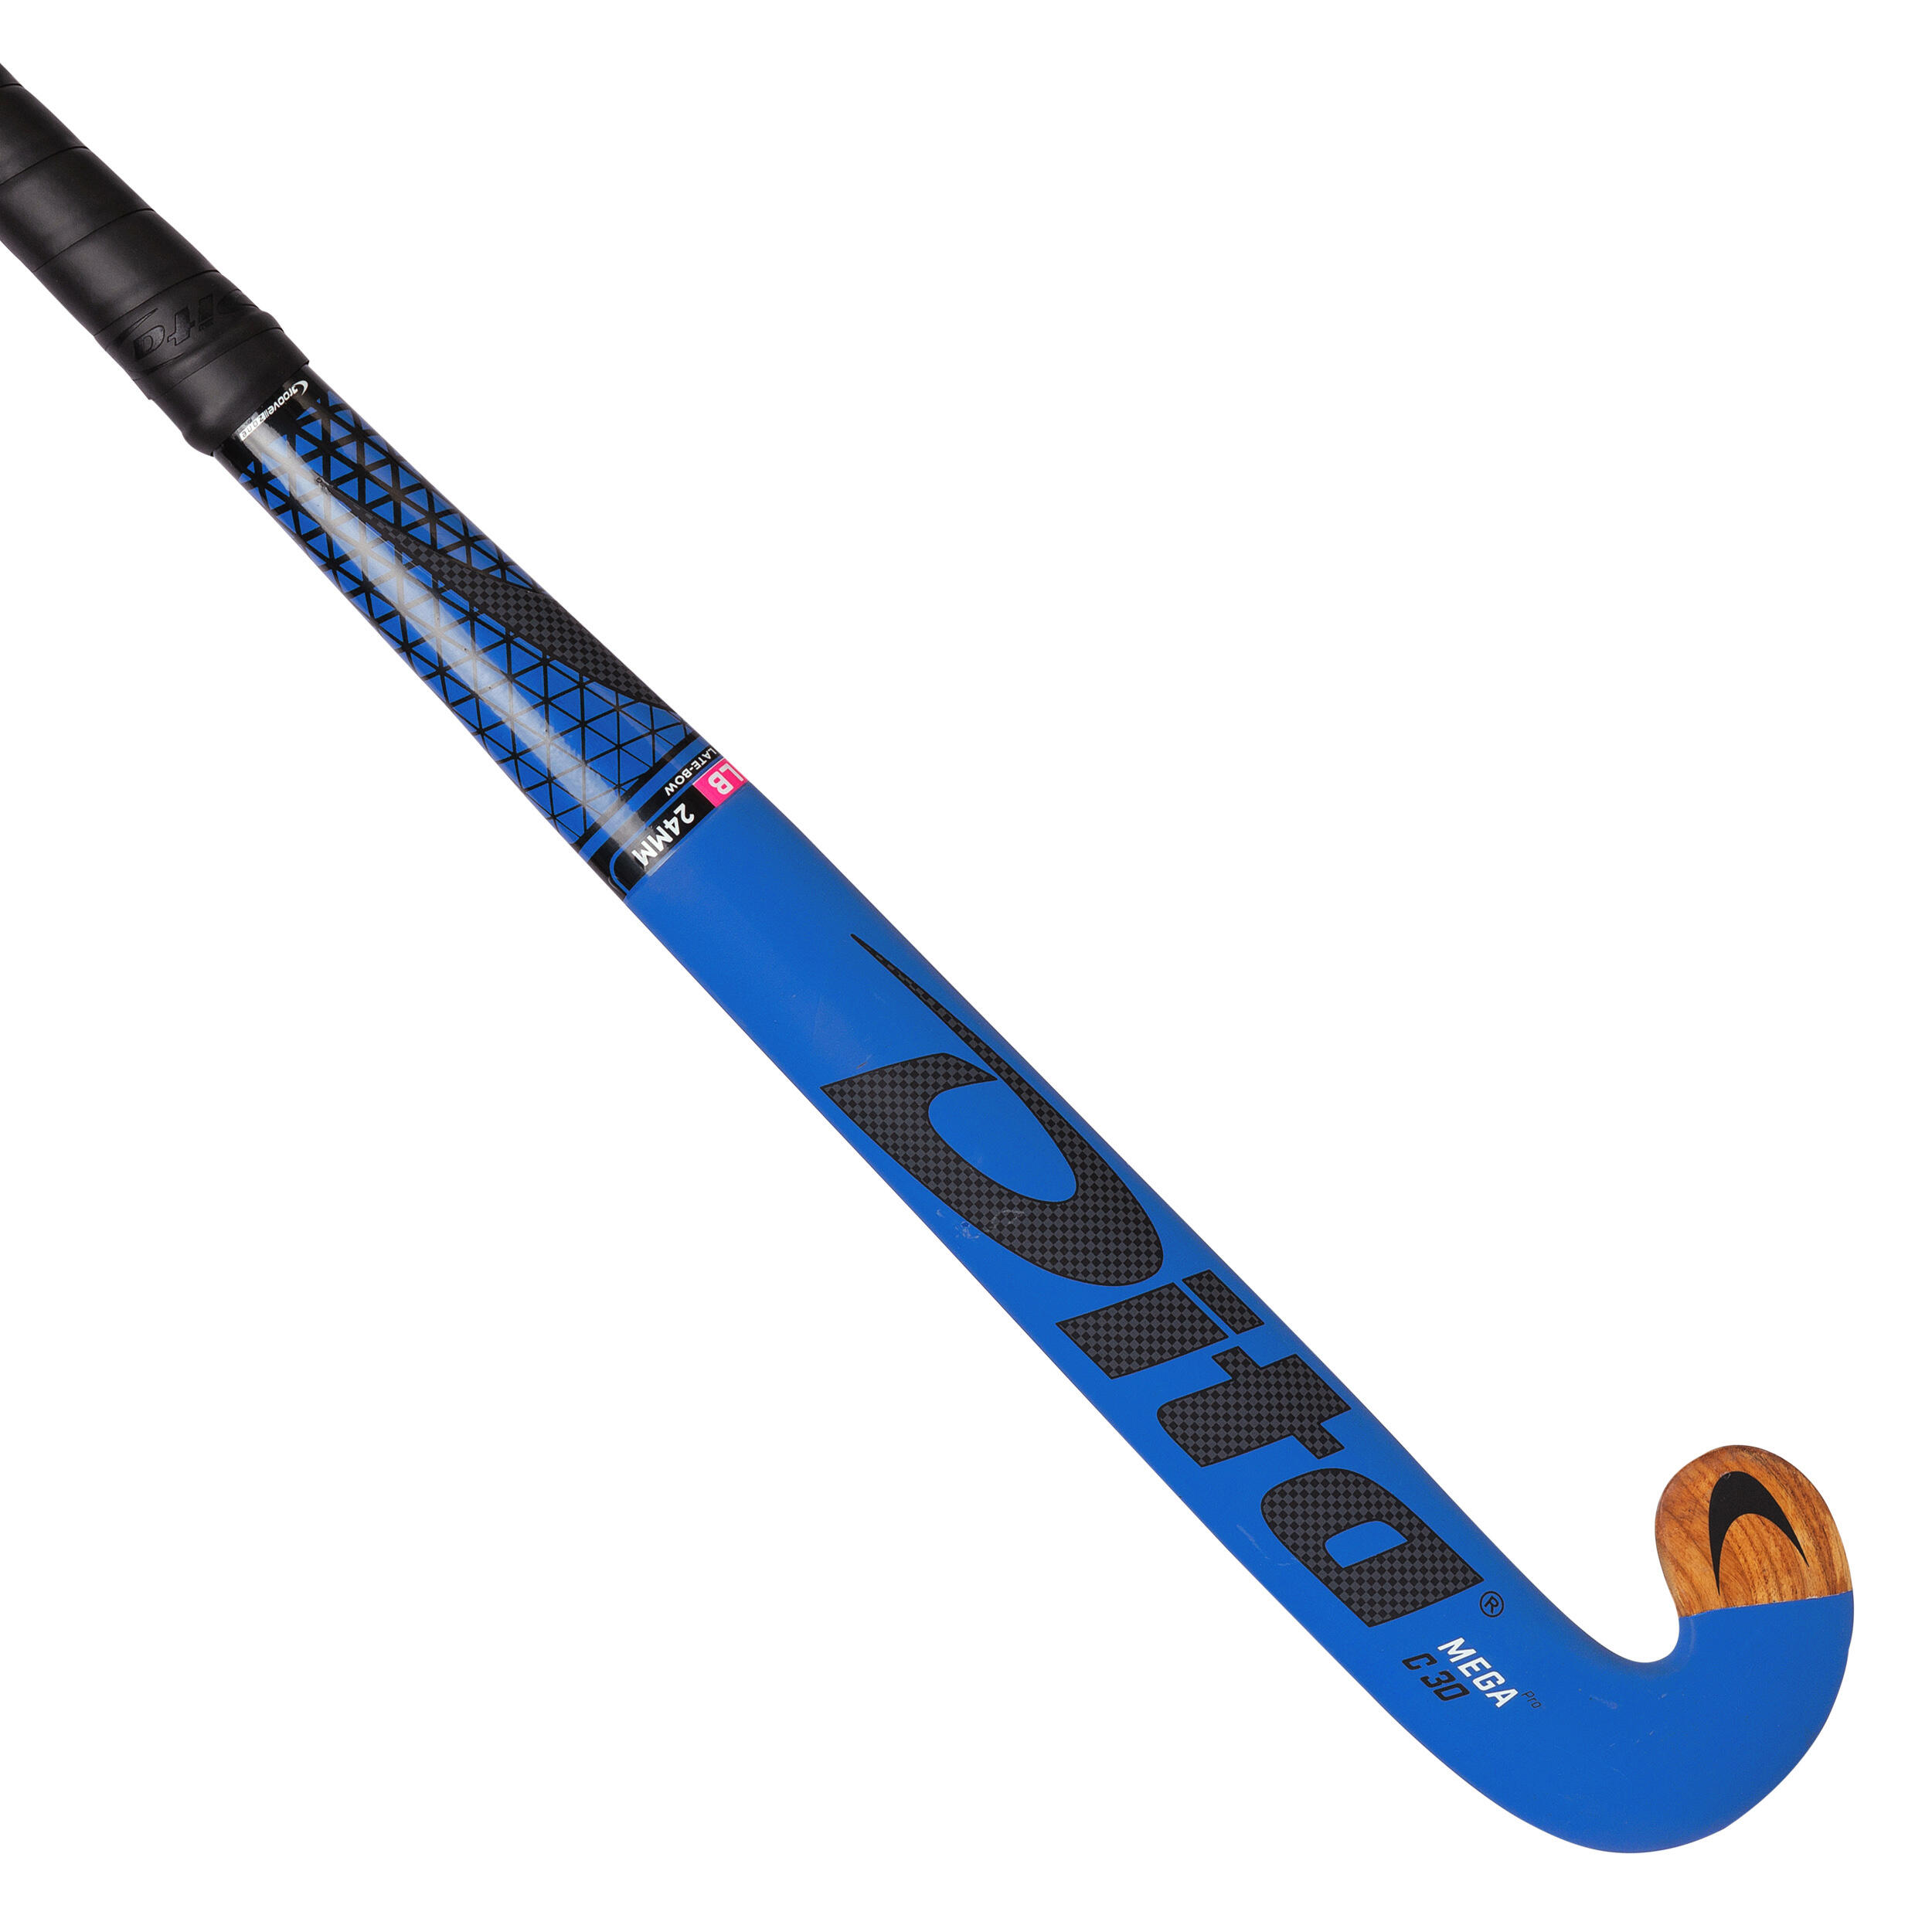 Damen/Herren Feldhockey Schläger Indoor - Megapro Wood C30 LB Damen/Herren blau